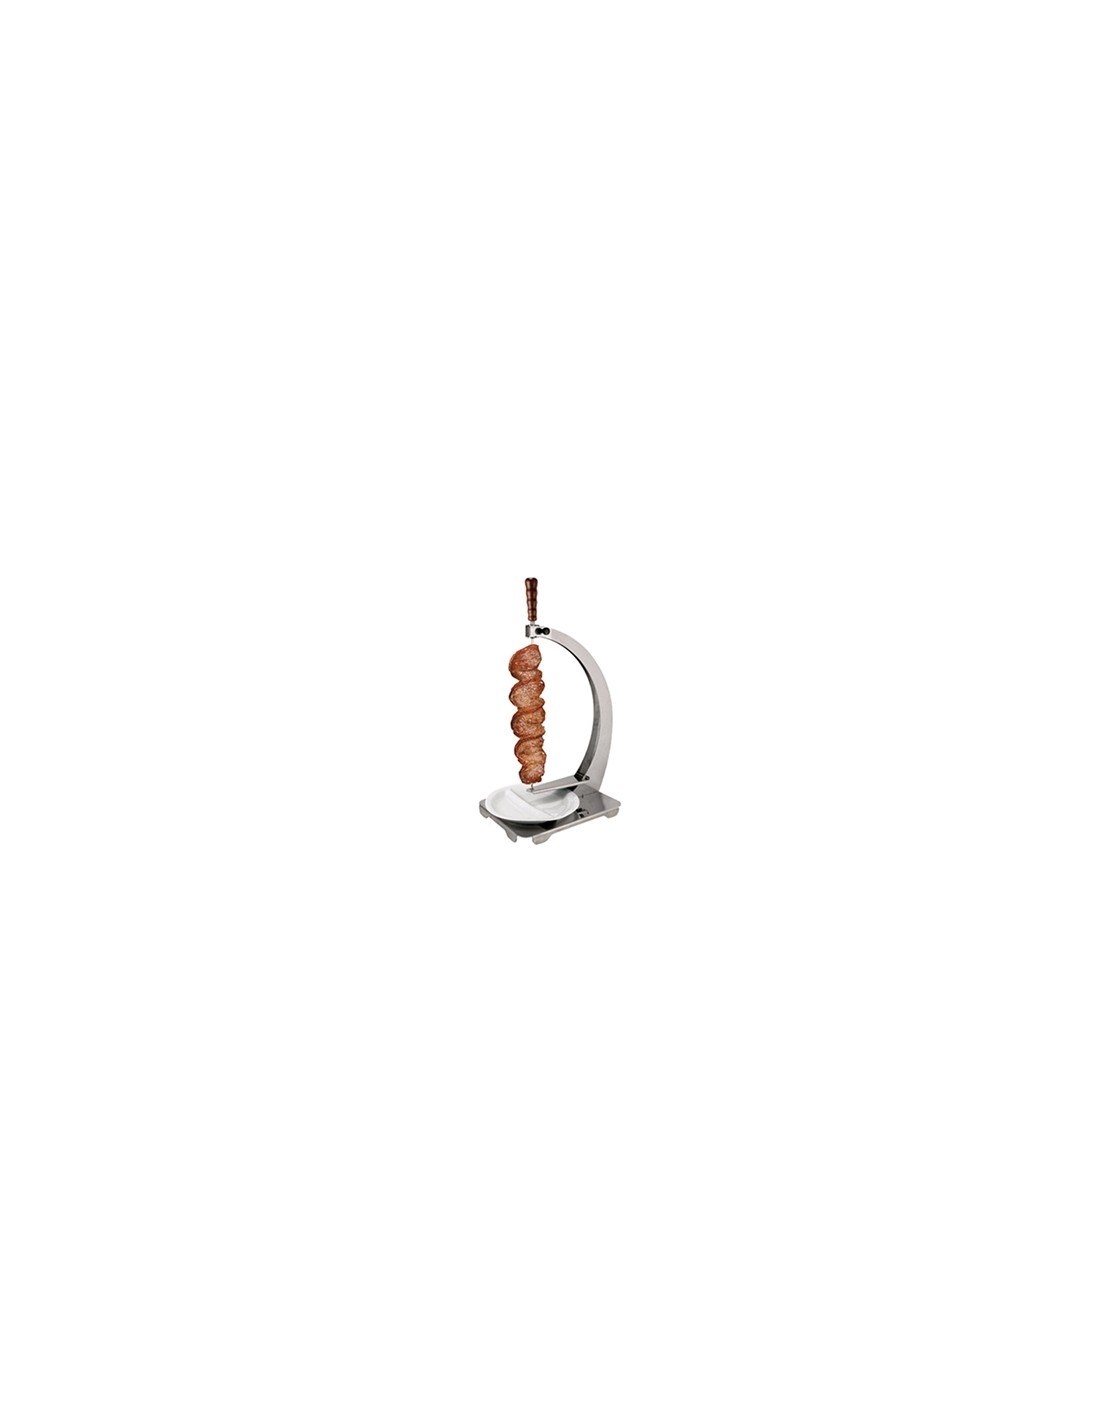 Soporte de mesa de 1 espada para Modelo Churrasco - Dimensiones cm L 30.6 x P 46.5 x 61.4H